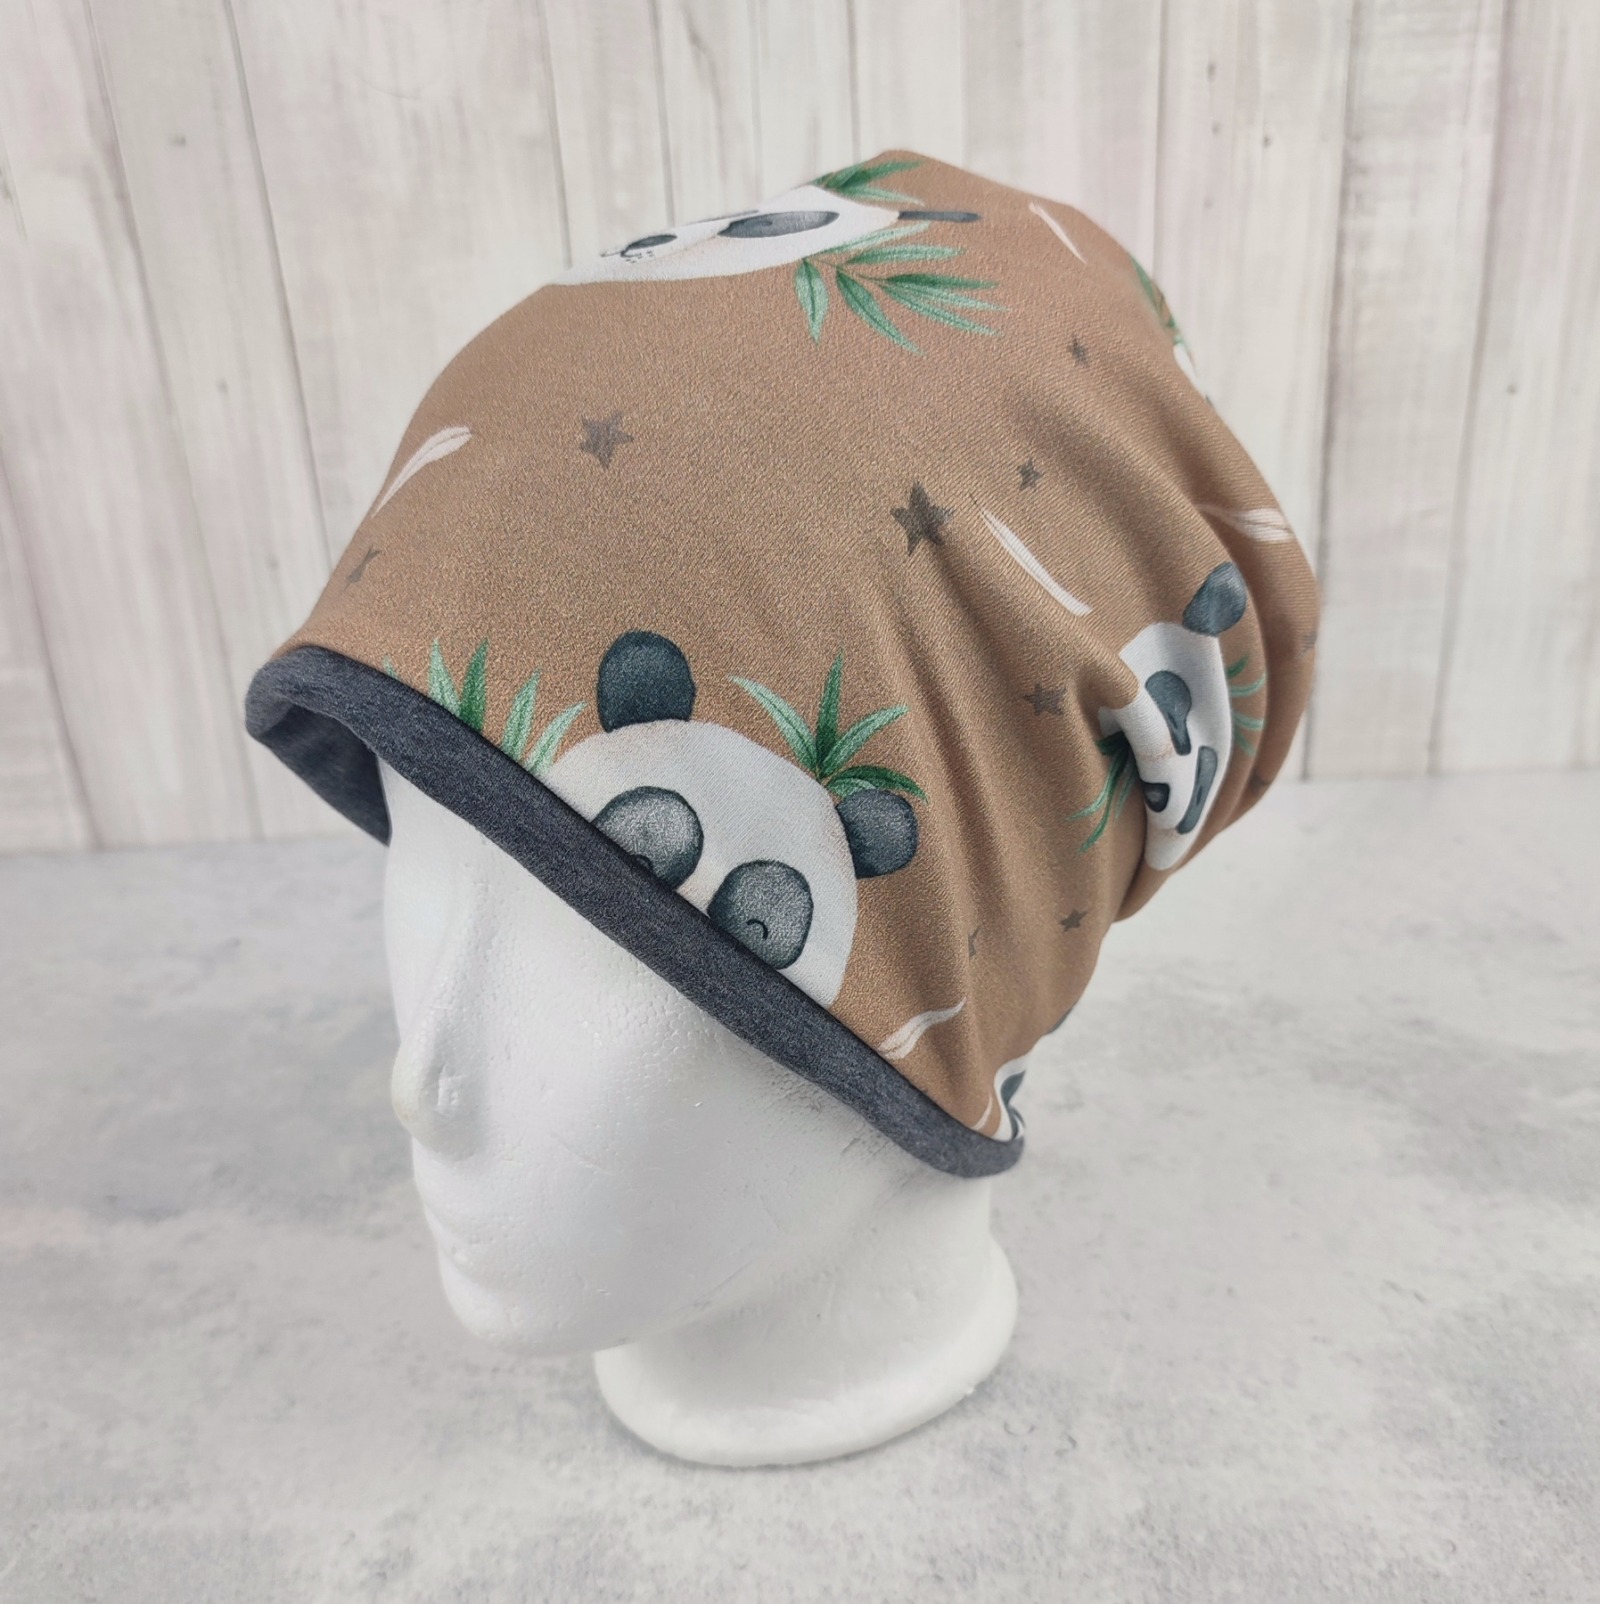 Beanie Pandabären - sandfarbene Mütze für Kinder, Größe ca. 48 - 54 cm Kopfumfang 3